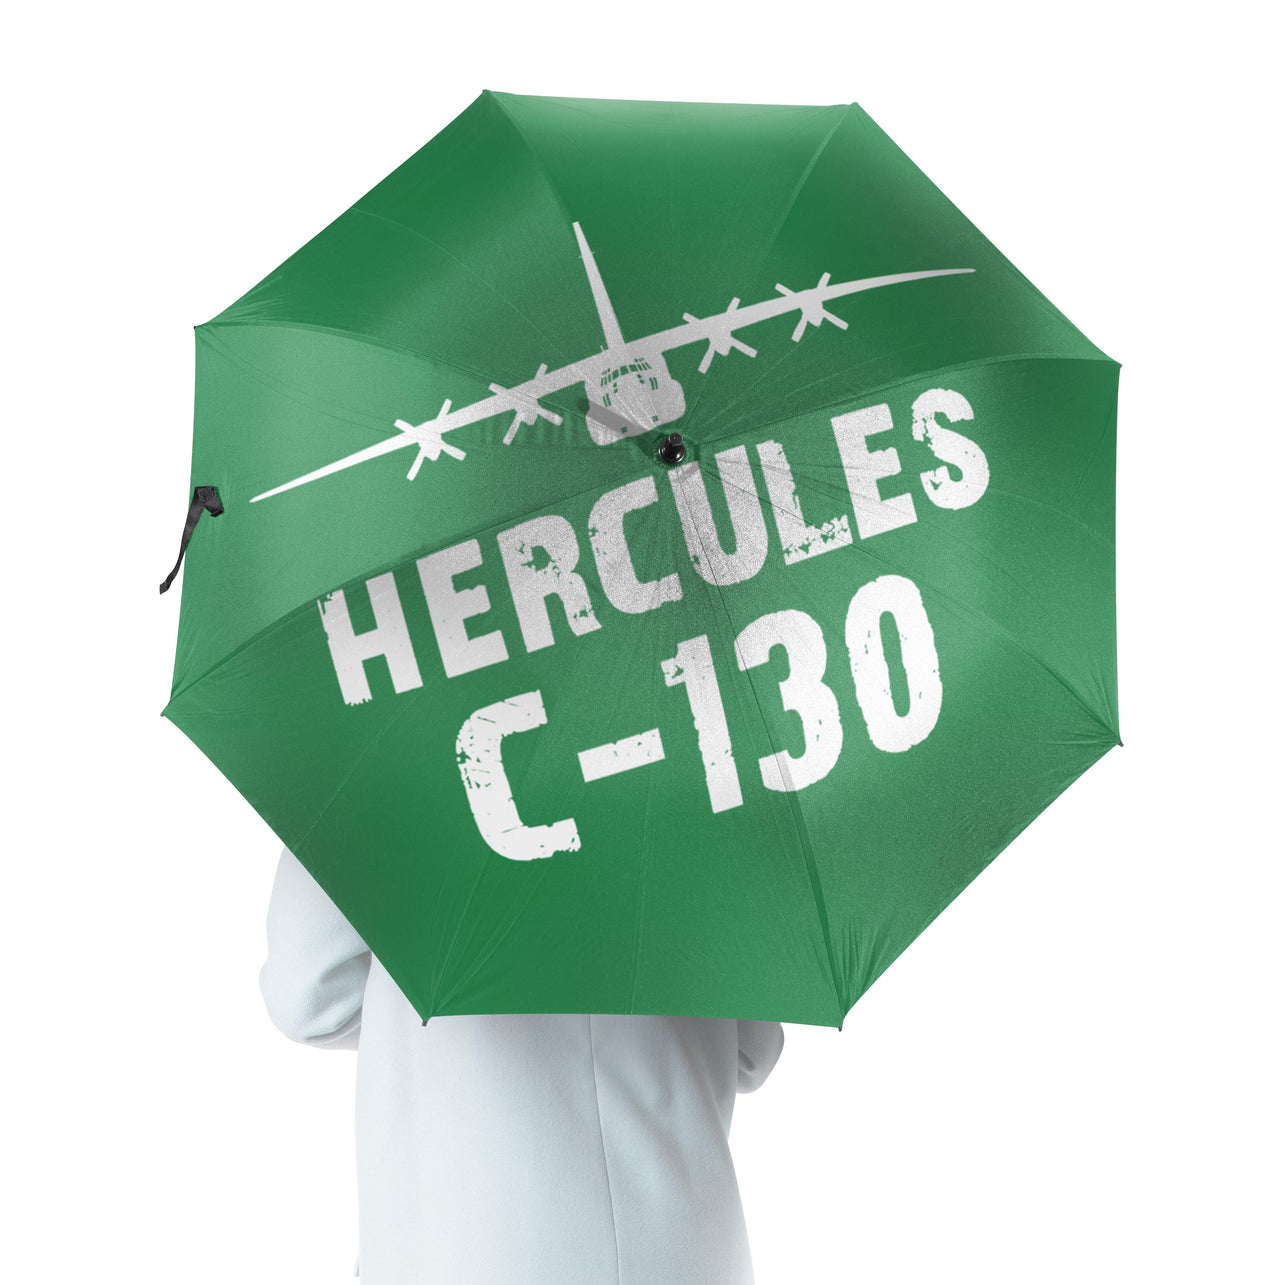 Hercules C-130 & Plane Designed Umbrella